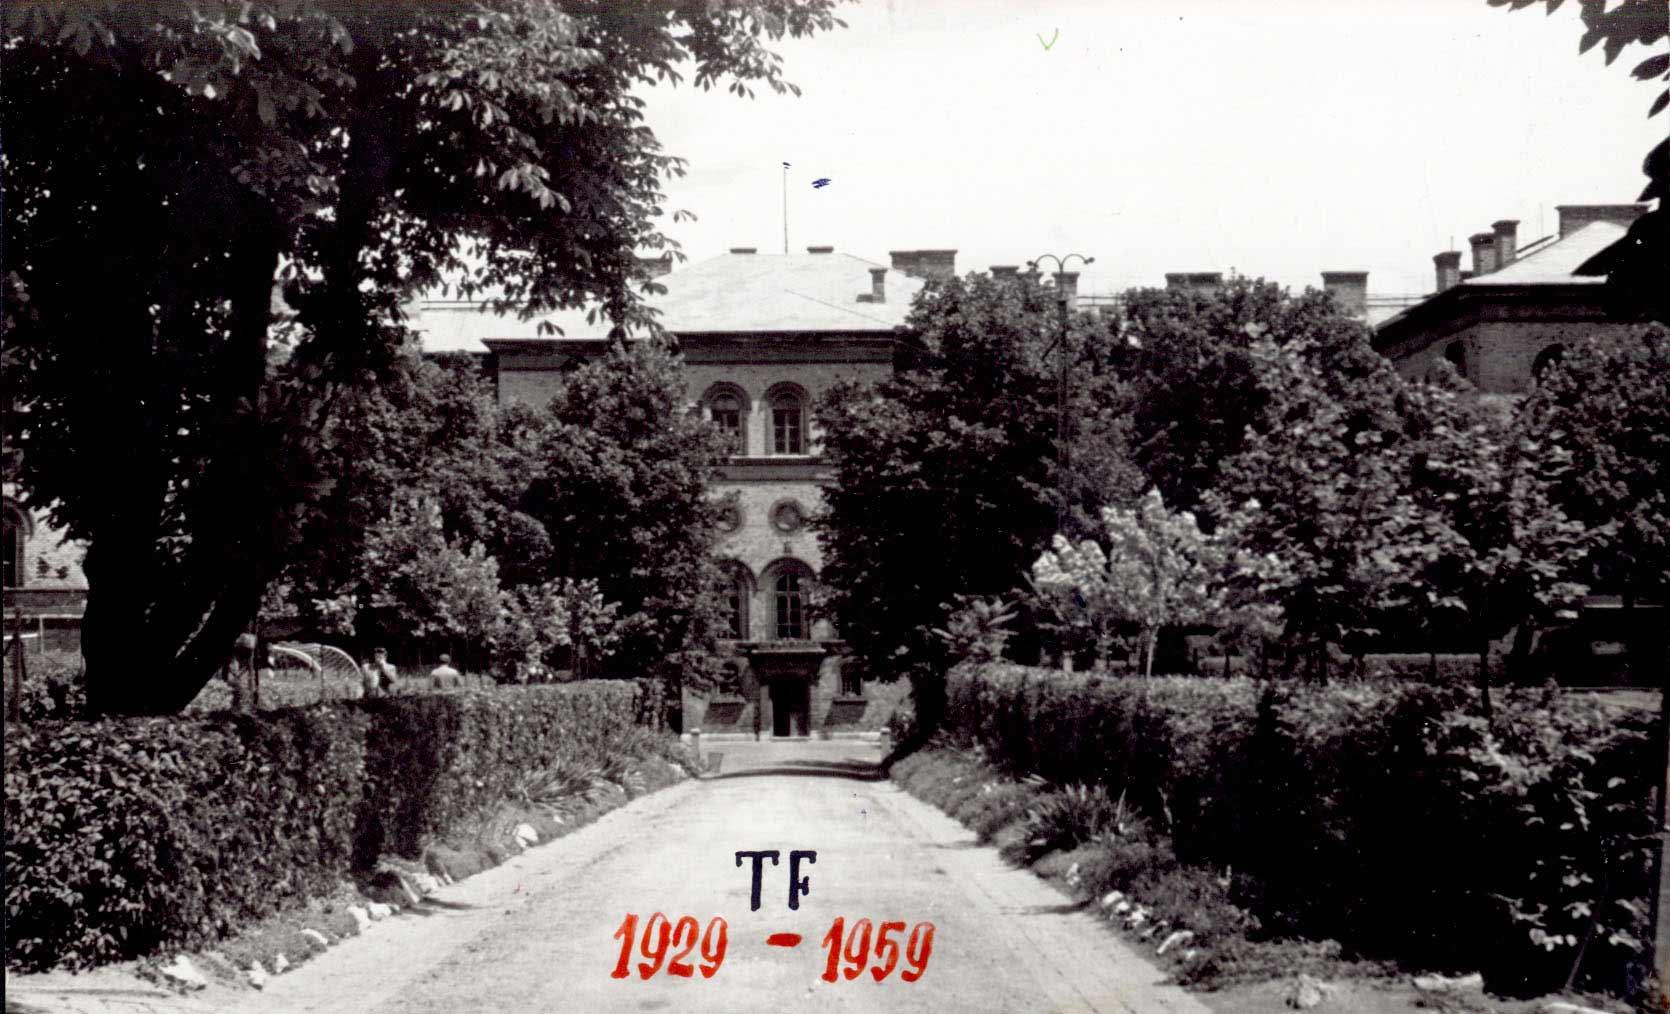 Levéltári kutatási eredmények 1956-ról - A TF főépülete 1959-ben, az Alkotás utca felől.